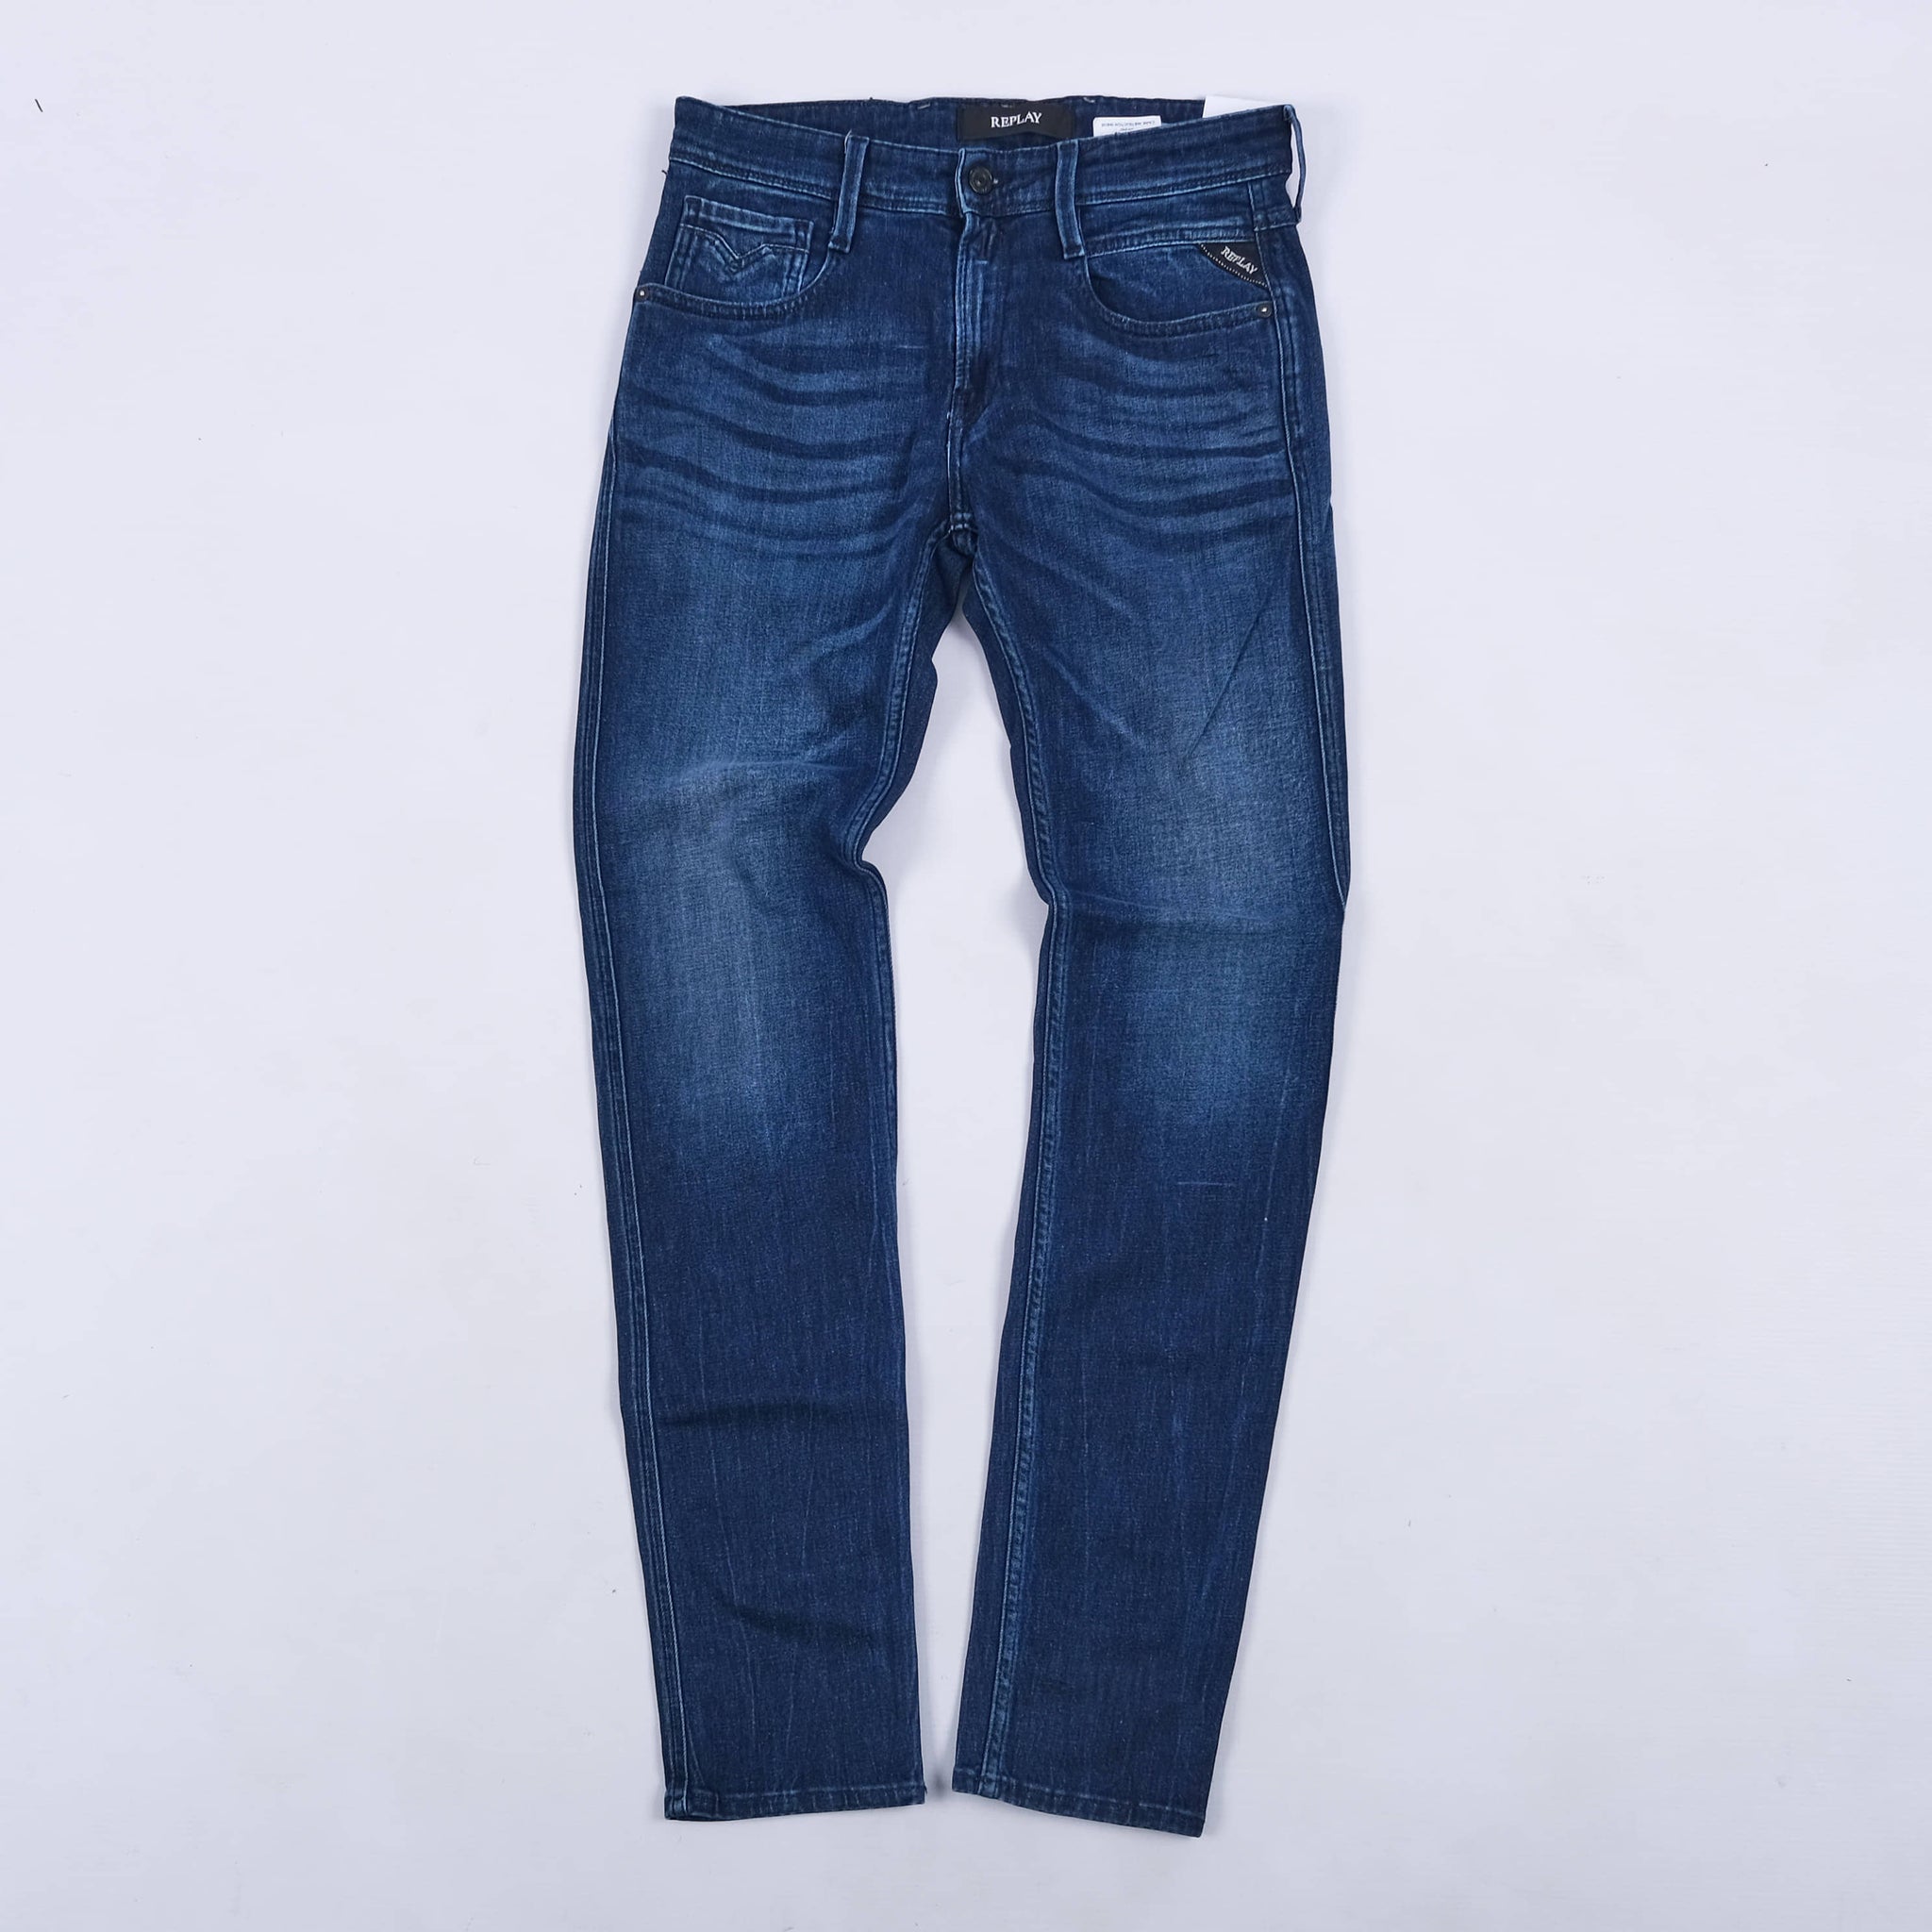 Anbass X-Lite Slim Fit Jeans (Dark Indigo) - TAPE Online